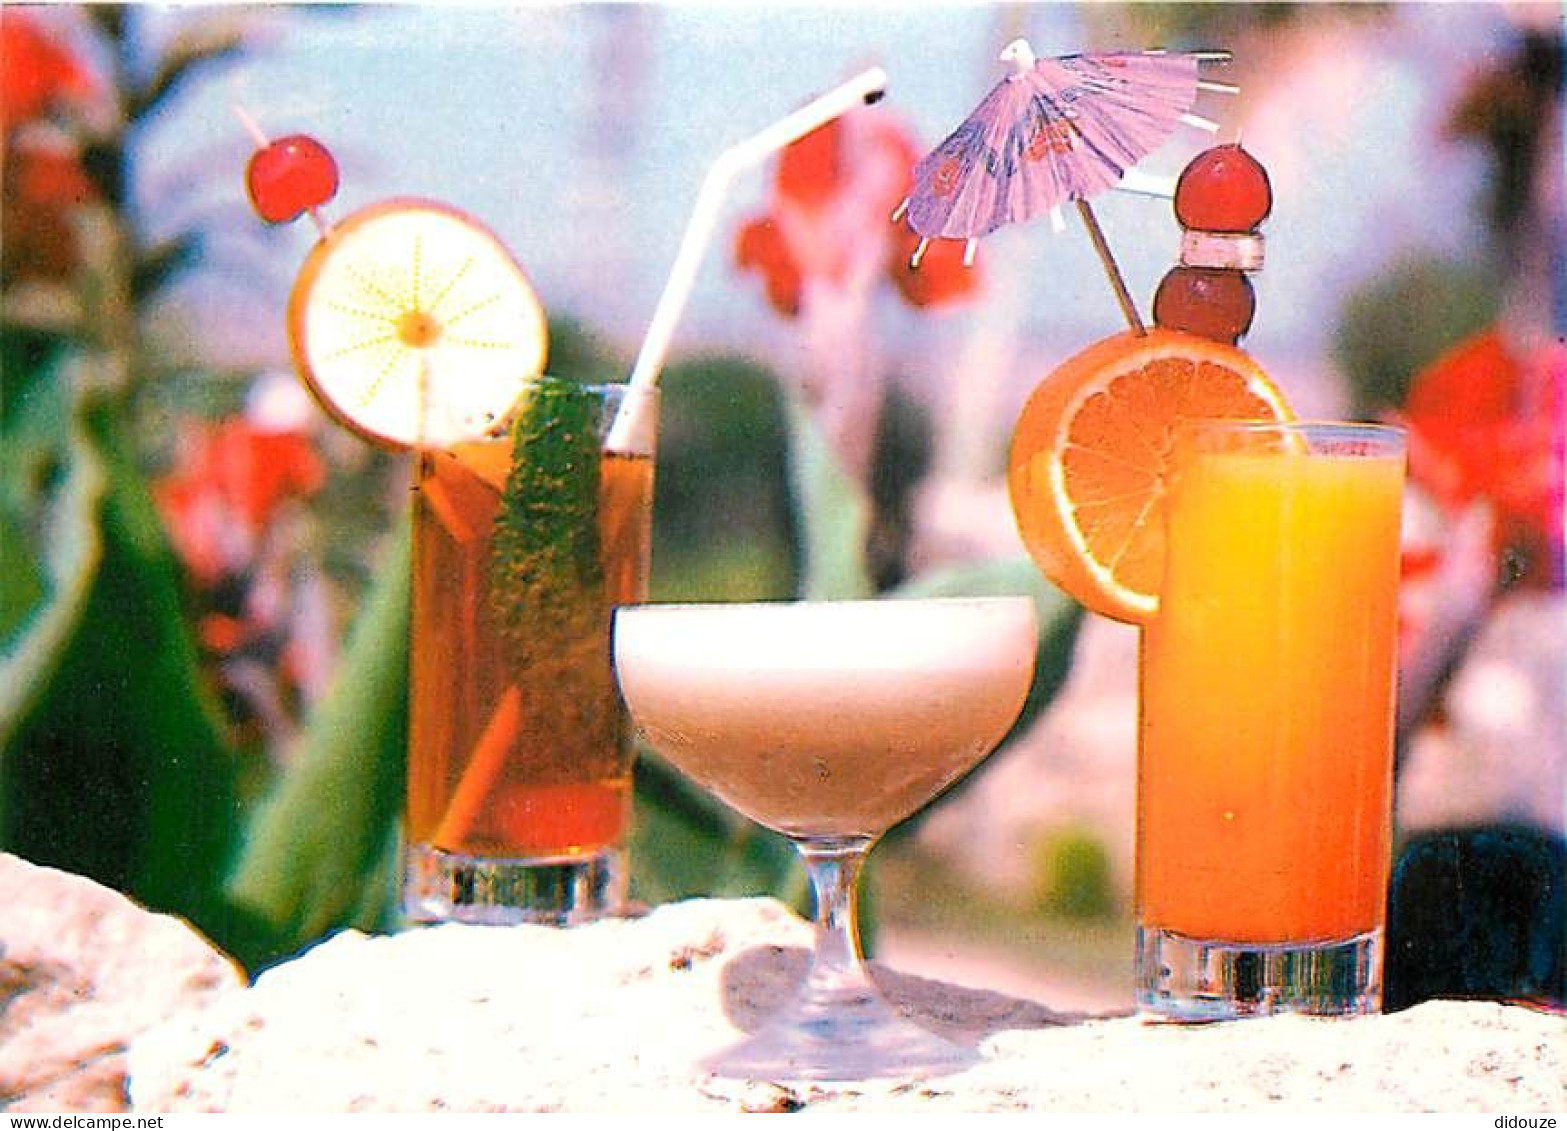 Chypre - Cyprus - Cocktails à Chypre - CPM - Carte Neuve - Voir Scans Recto-Verso - Zypern